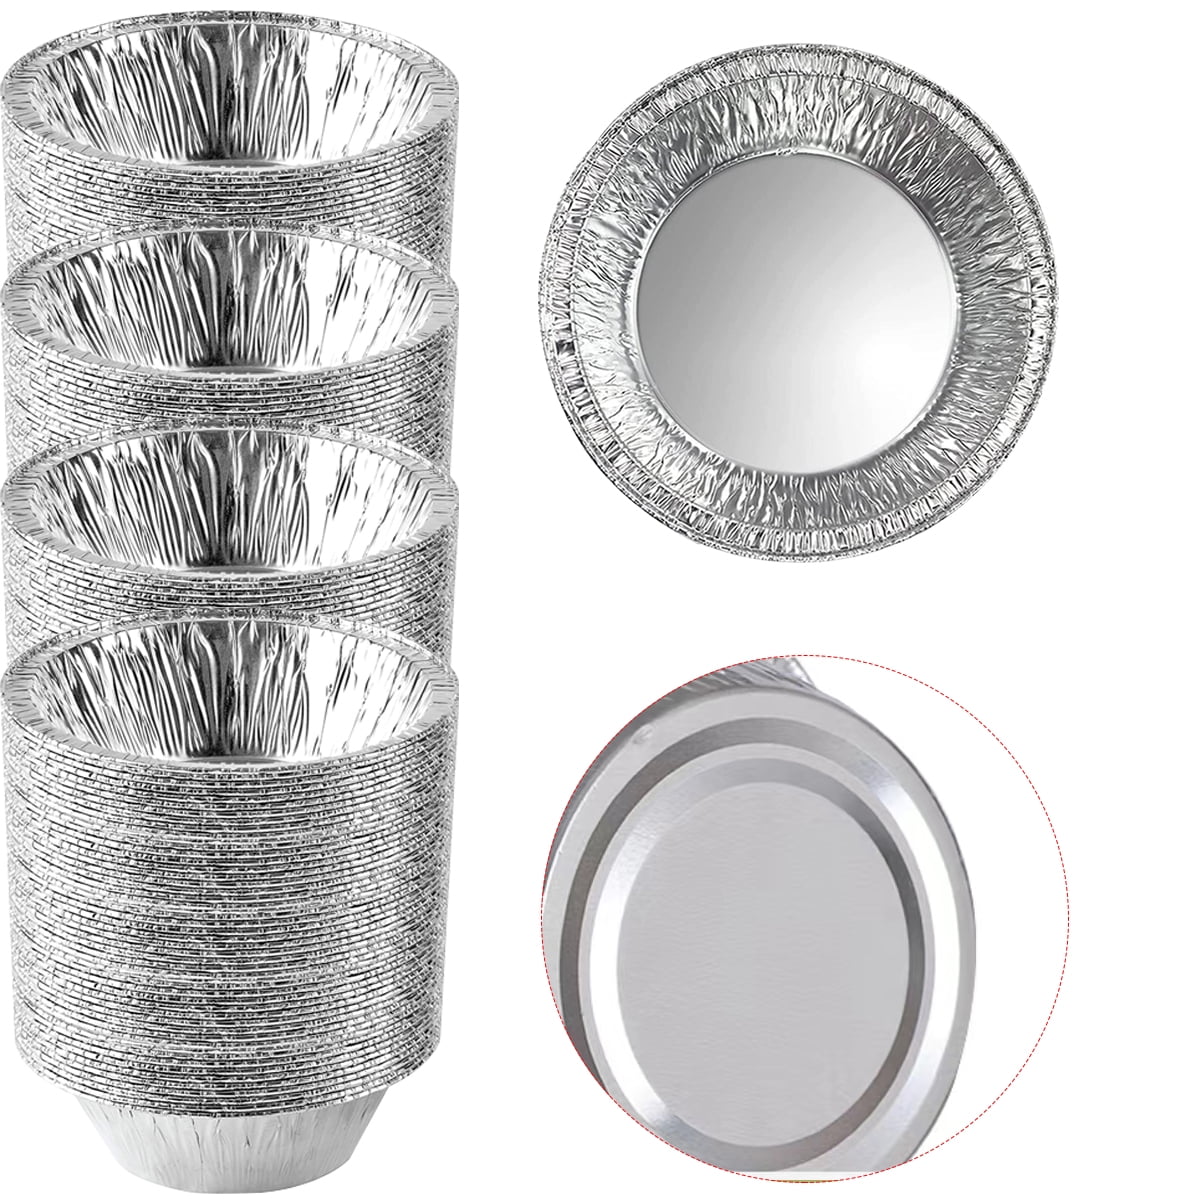 MT Products 4 1/4 Disposable Aluminum Foil Tart / Pie Pan 7/8 Deep - (50 Pieces)